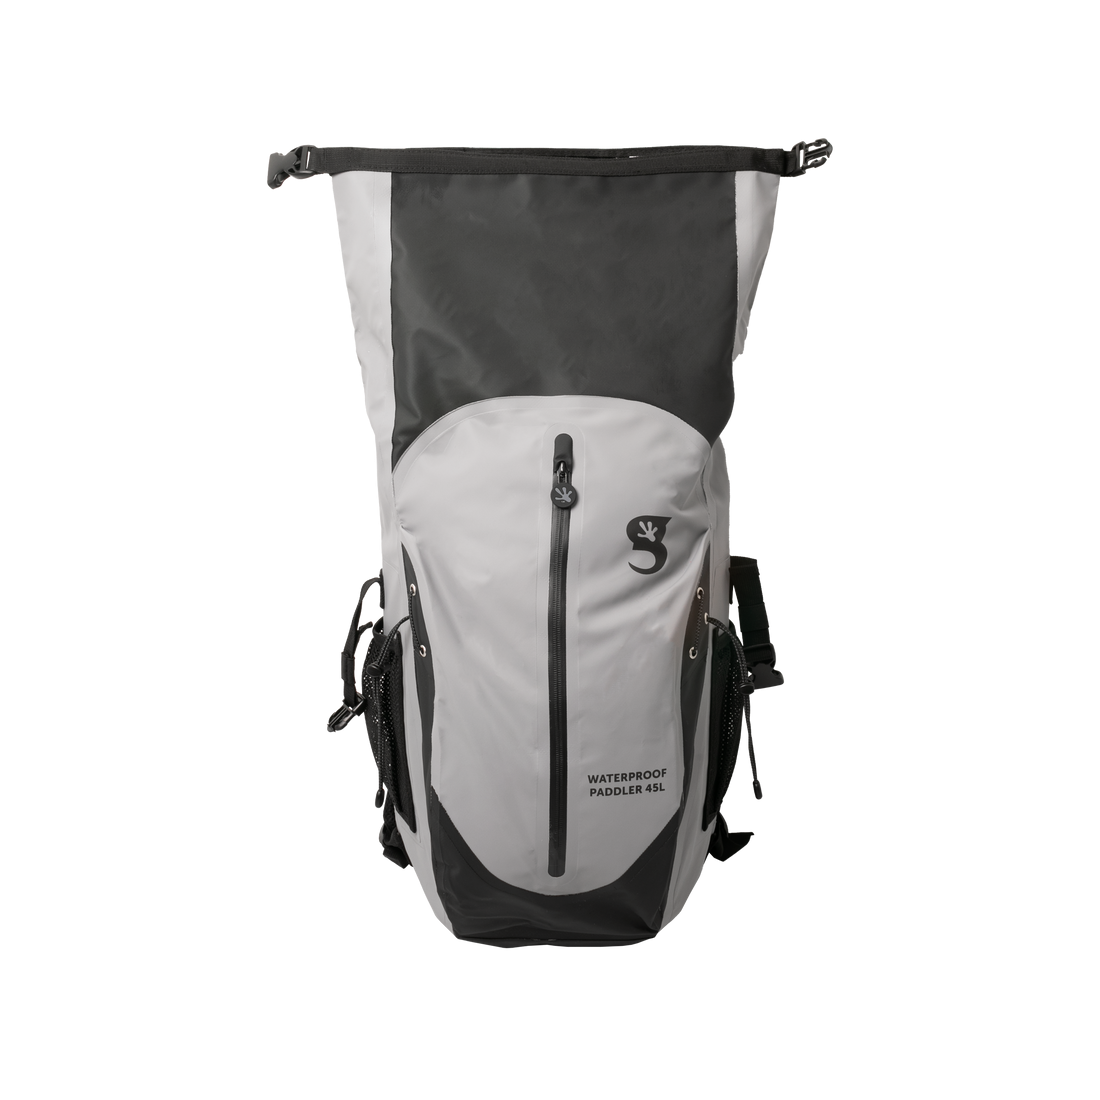 Paddler 45L Waterproof Backpack - Grey/Black